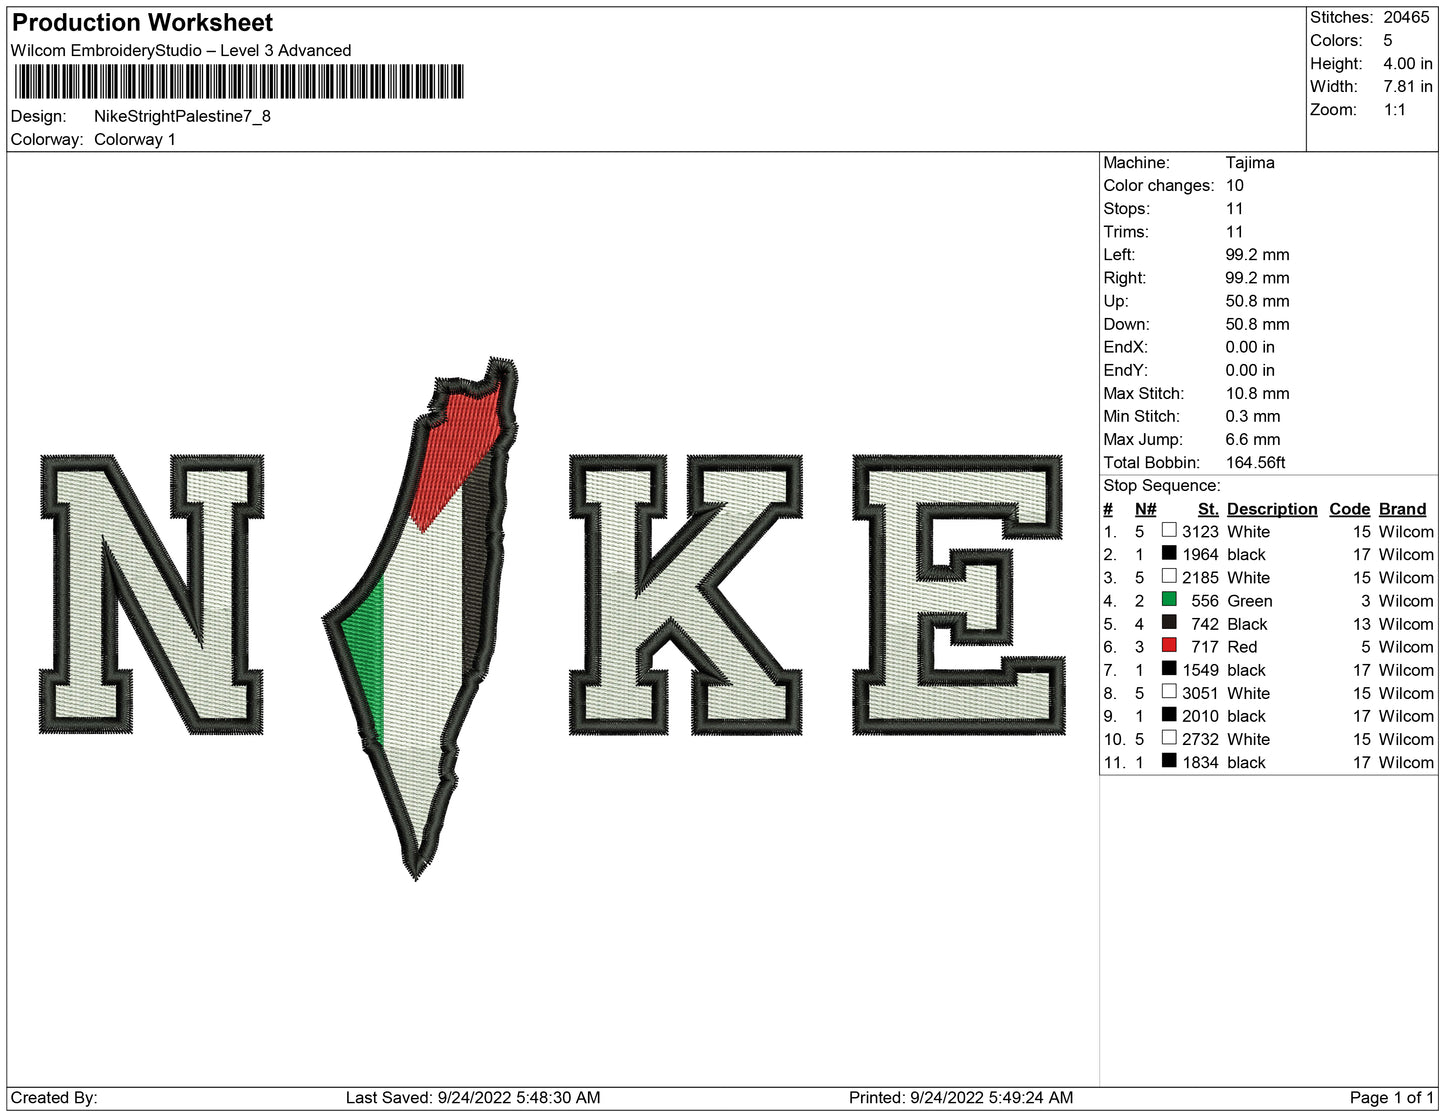 Nike Stright Palestine